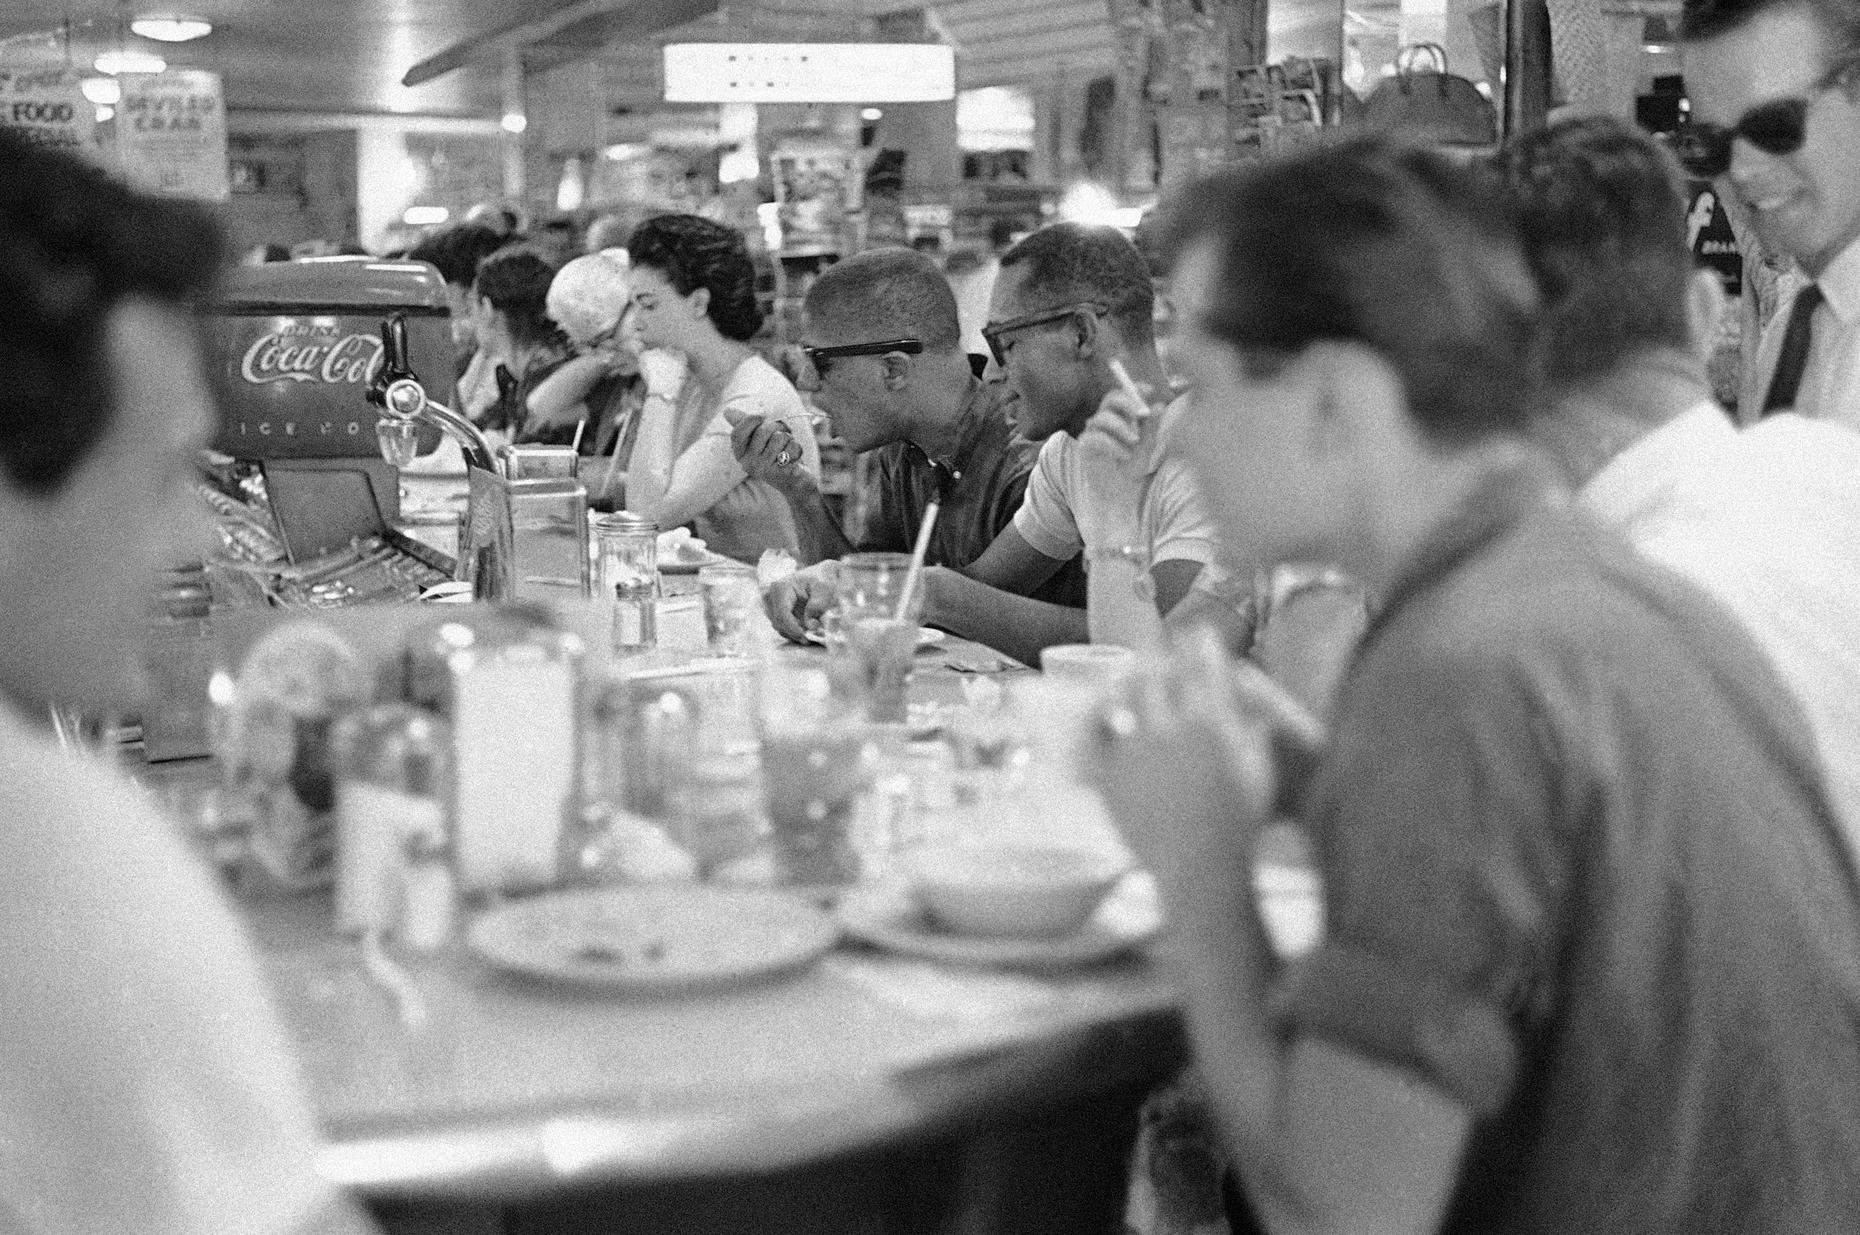 racial segregation in restaurants